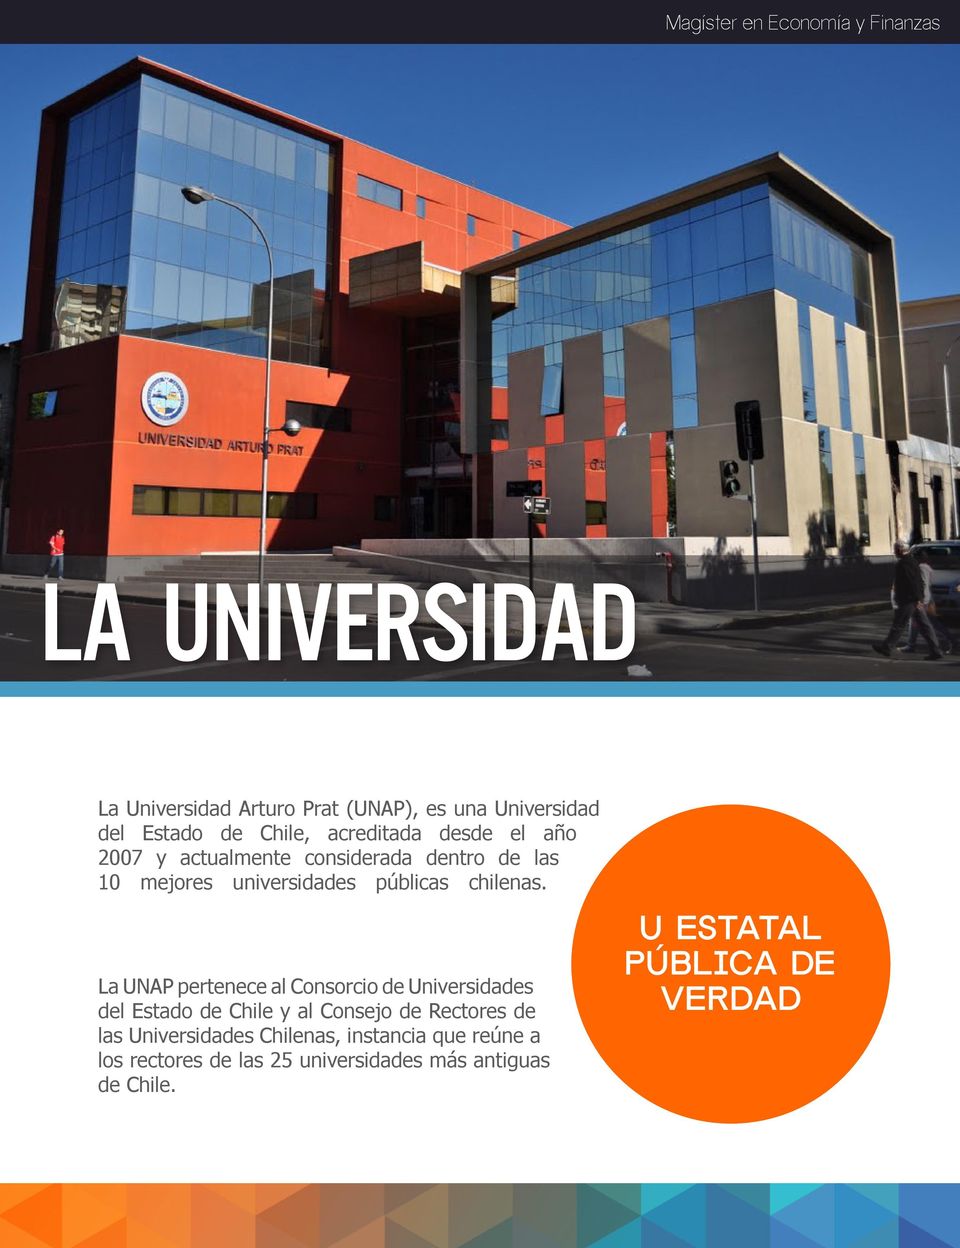 La UNAP pertenece al Consorcio de Universidades del Estado de Chile y al Consejo de Rectores de las